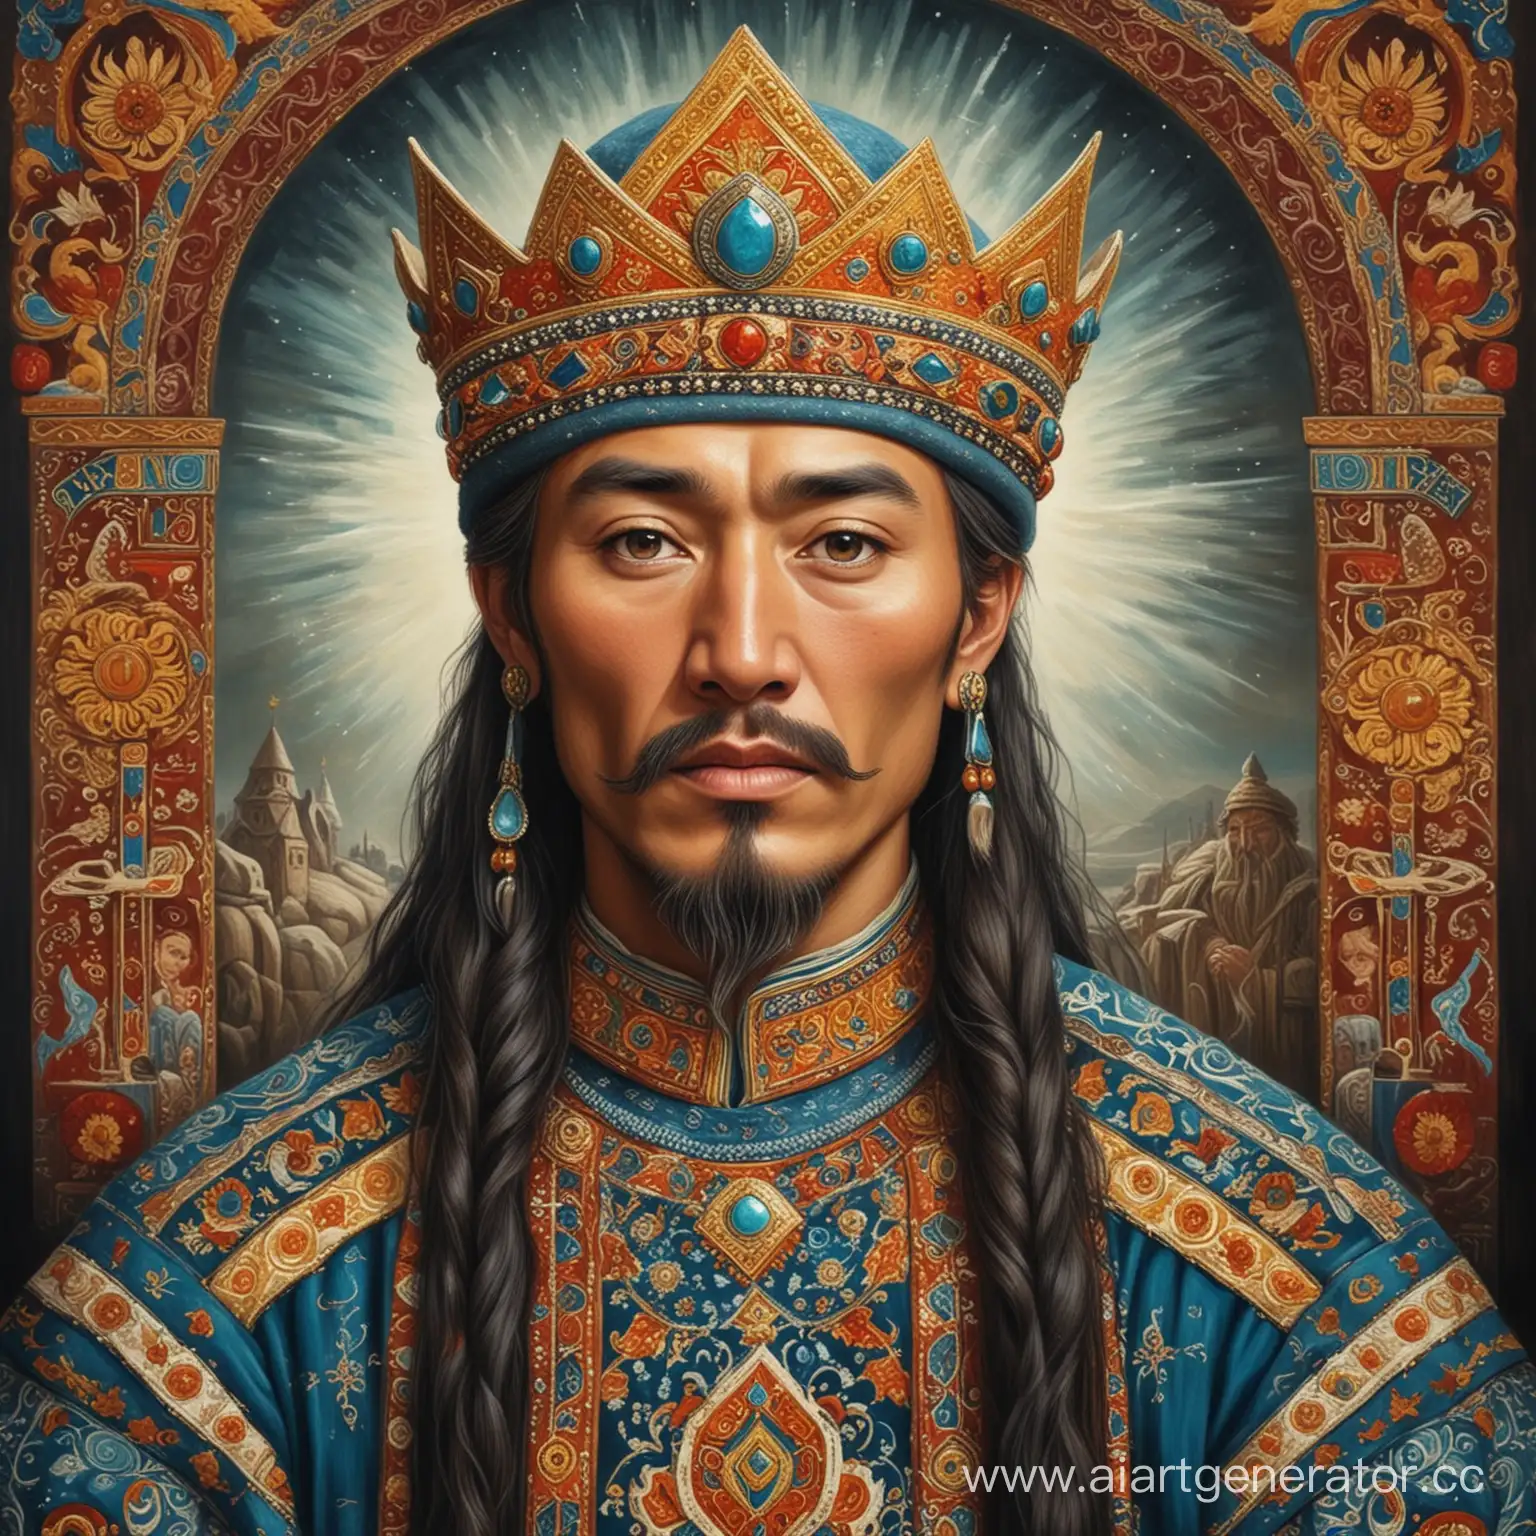 портрет воображаемого персонажа "Царя подземного царства" из  казахской национальной народной сказки "Ертостик" в национальном стиле
